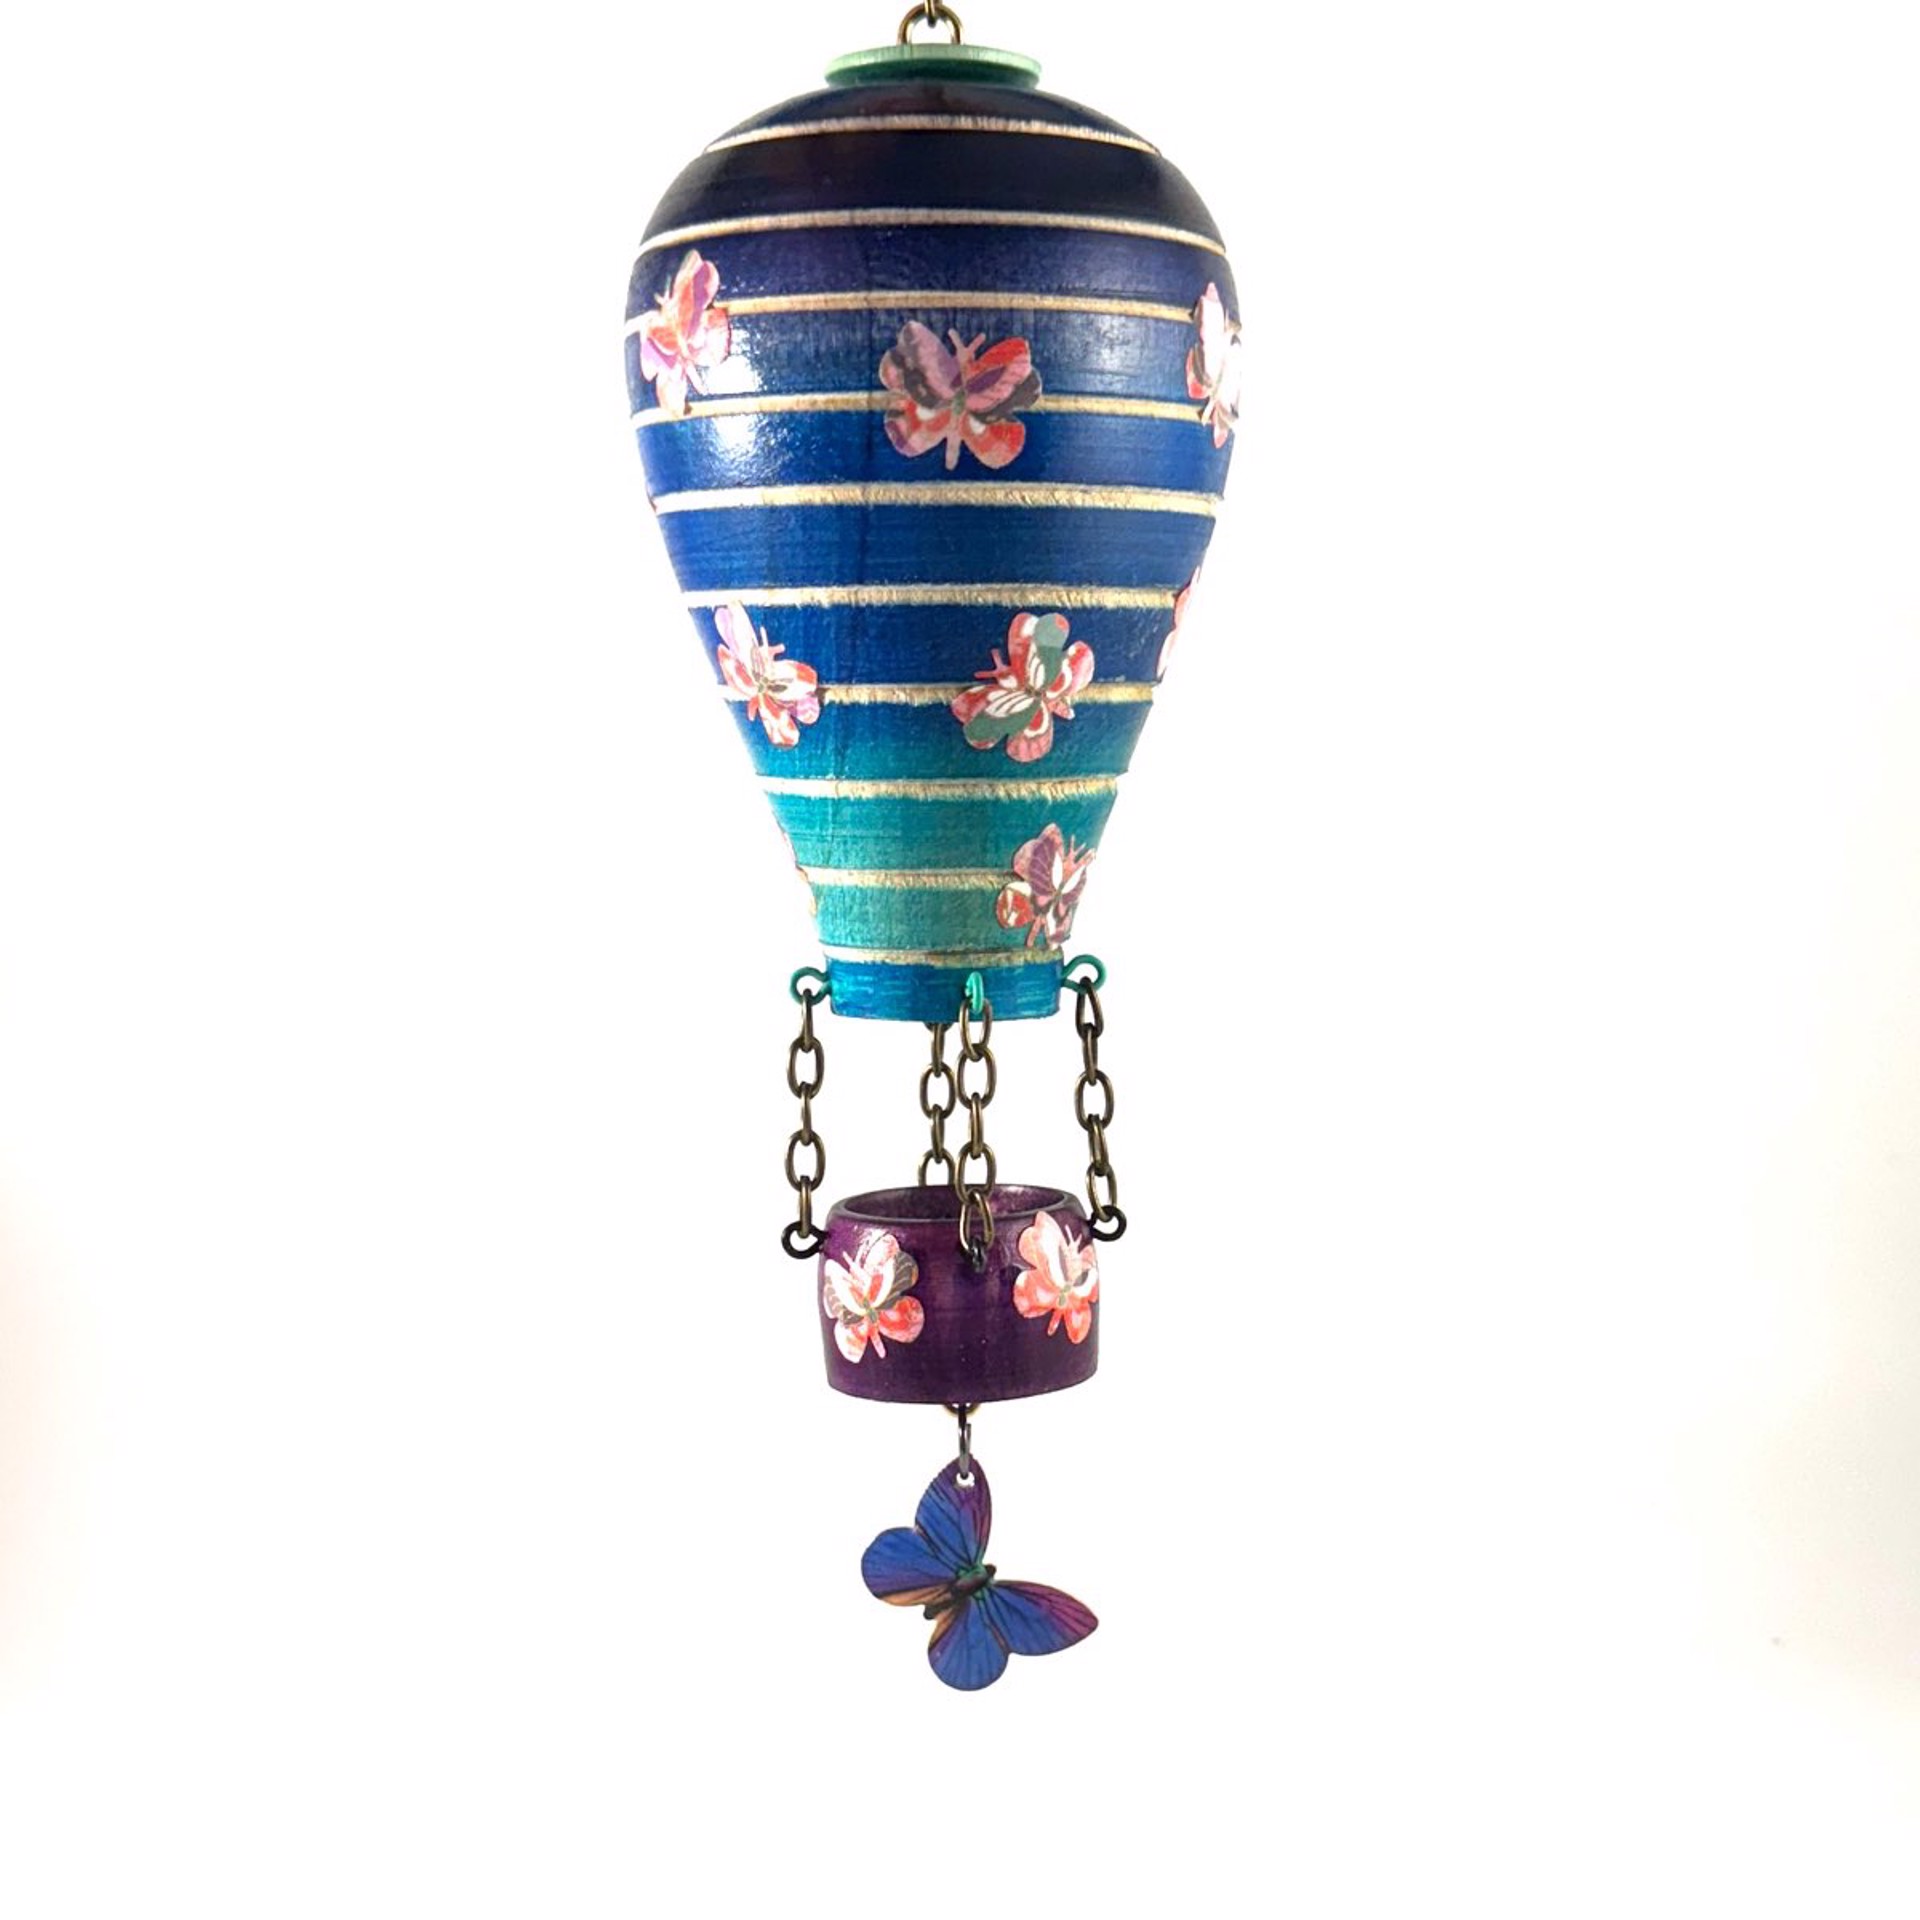 Whimsical Hot Air Balloon Ornament MT23-20 by Marc Tannenbaum